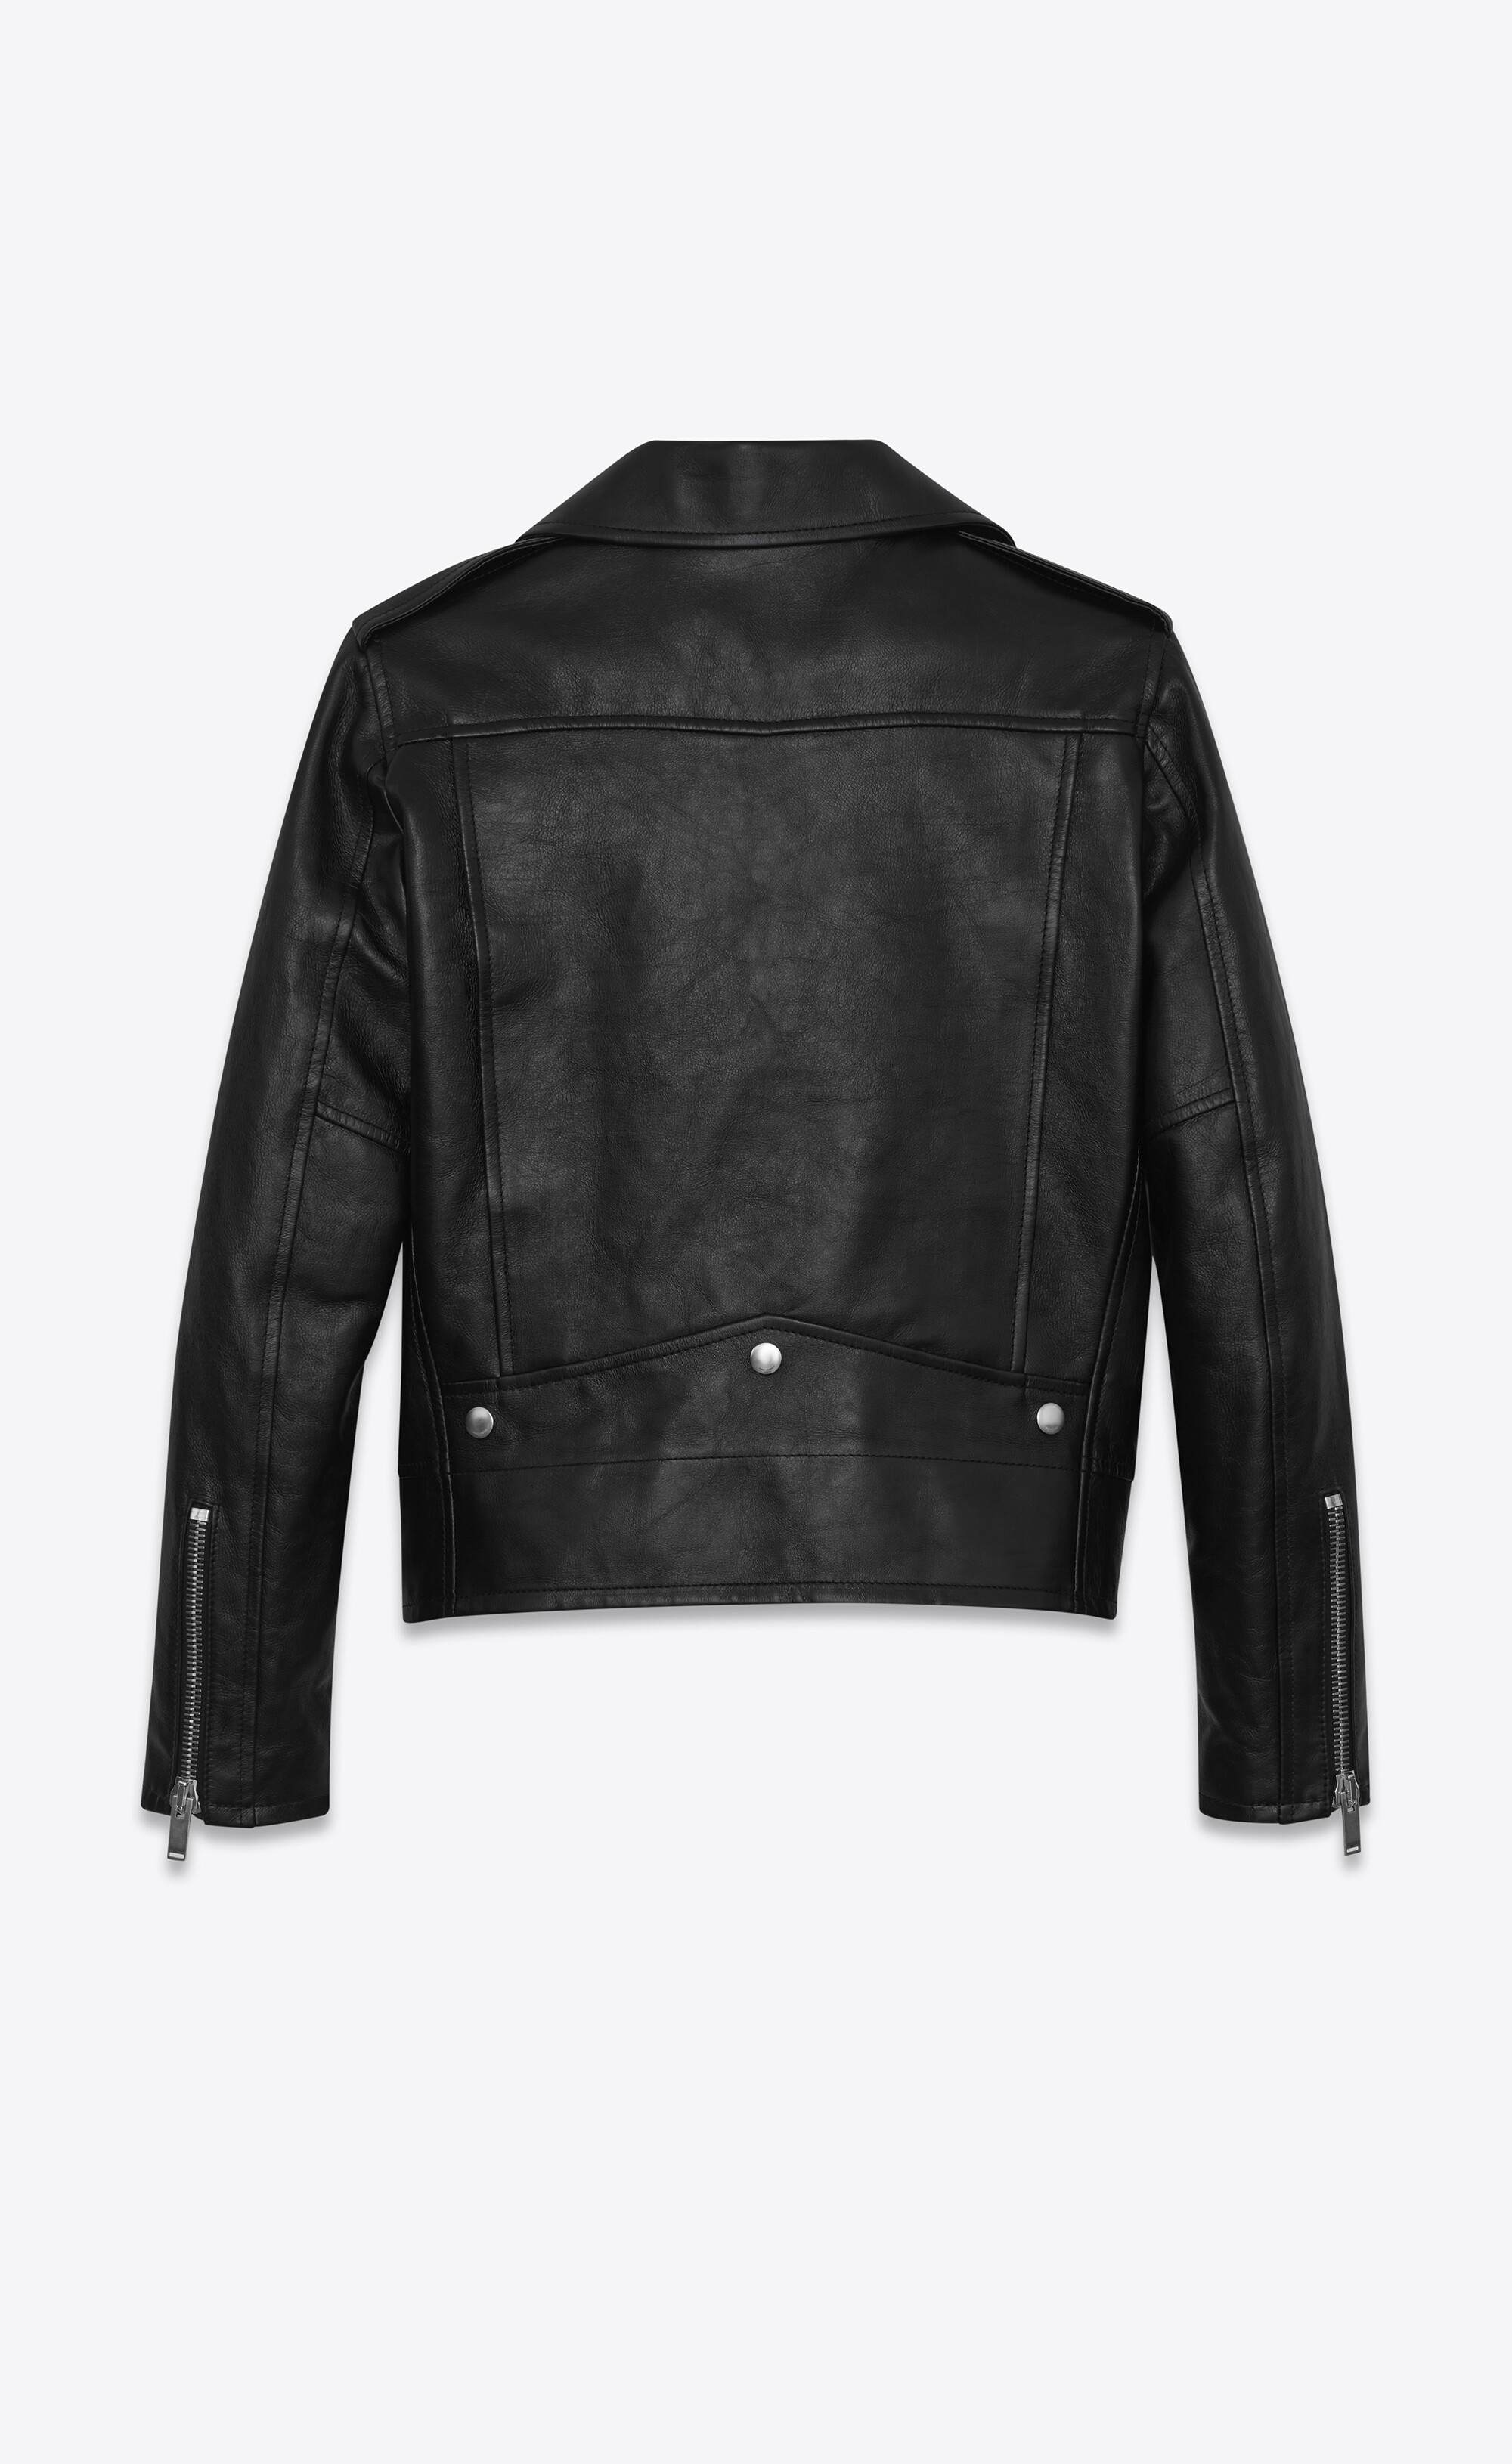 motorcycle jacket in black vintage leather - 2